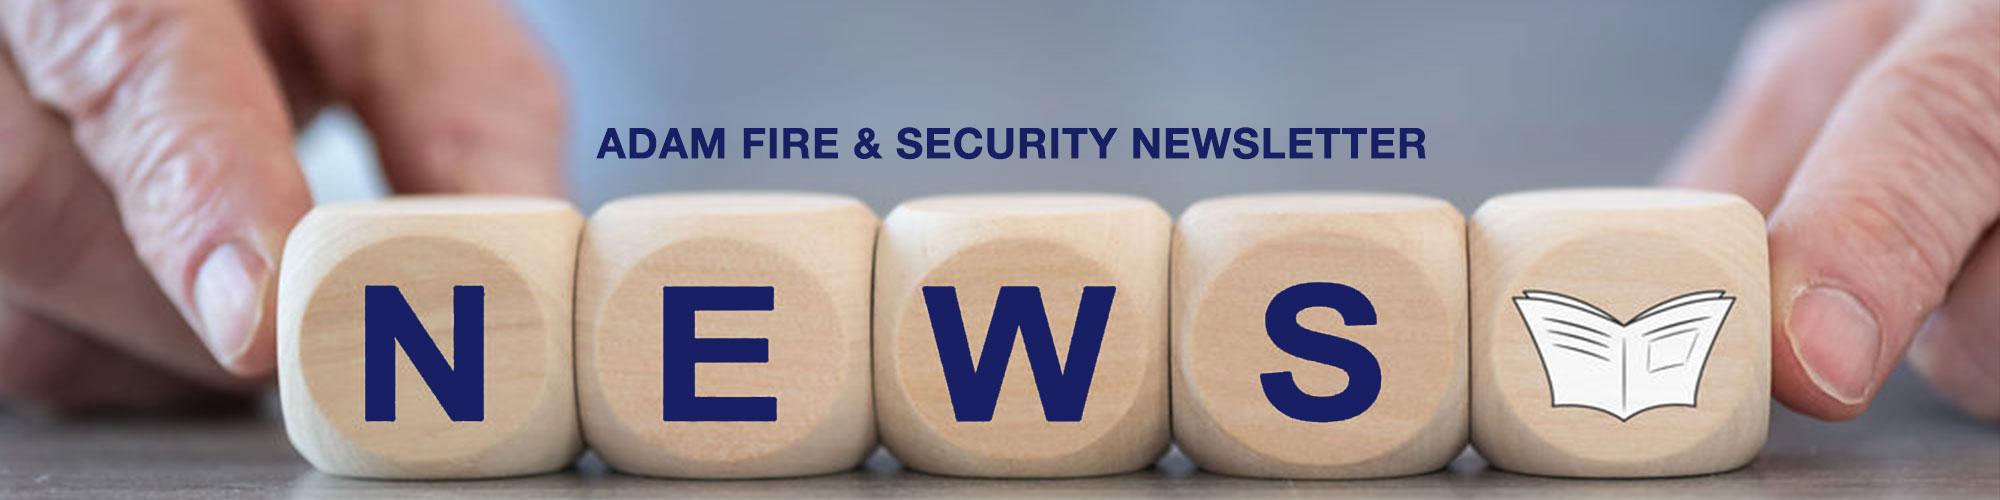 ADAM Fire & Security Newsletter